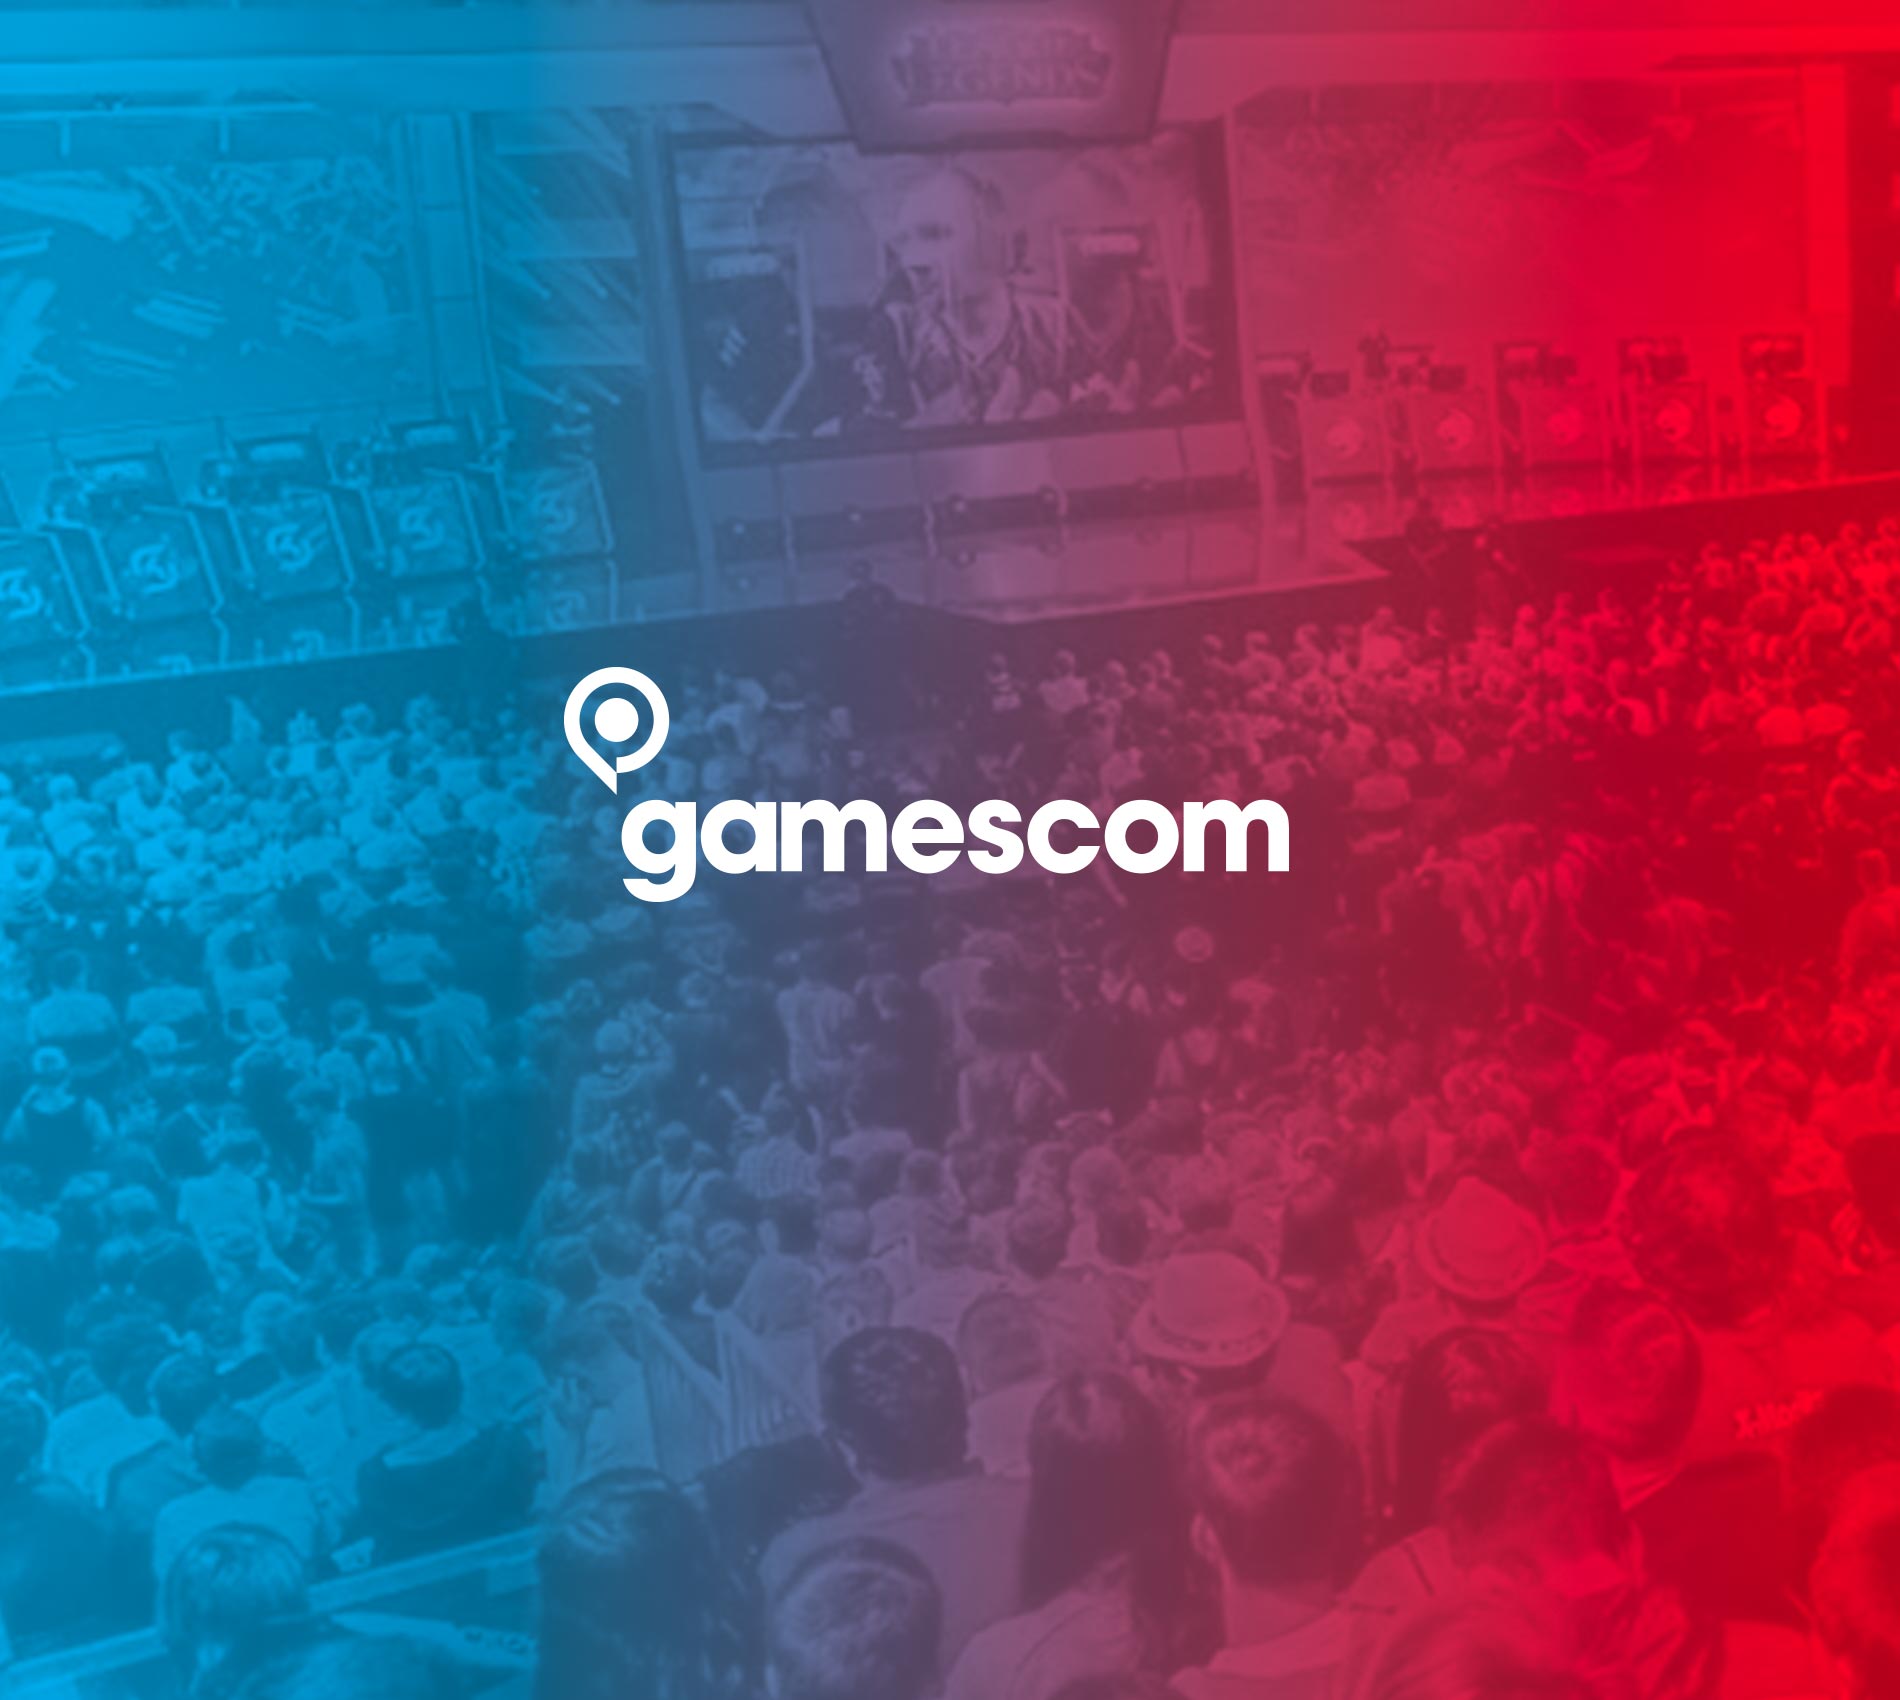 gamescom 2015, Cologne